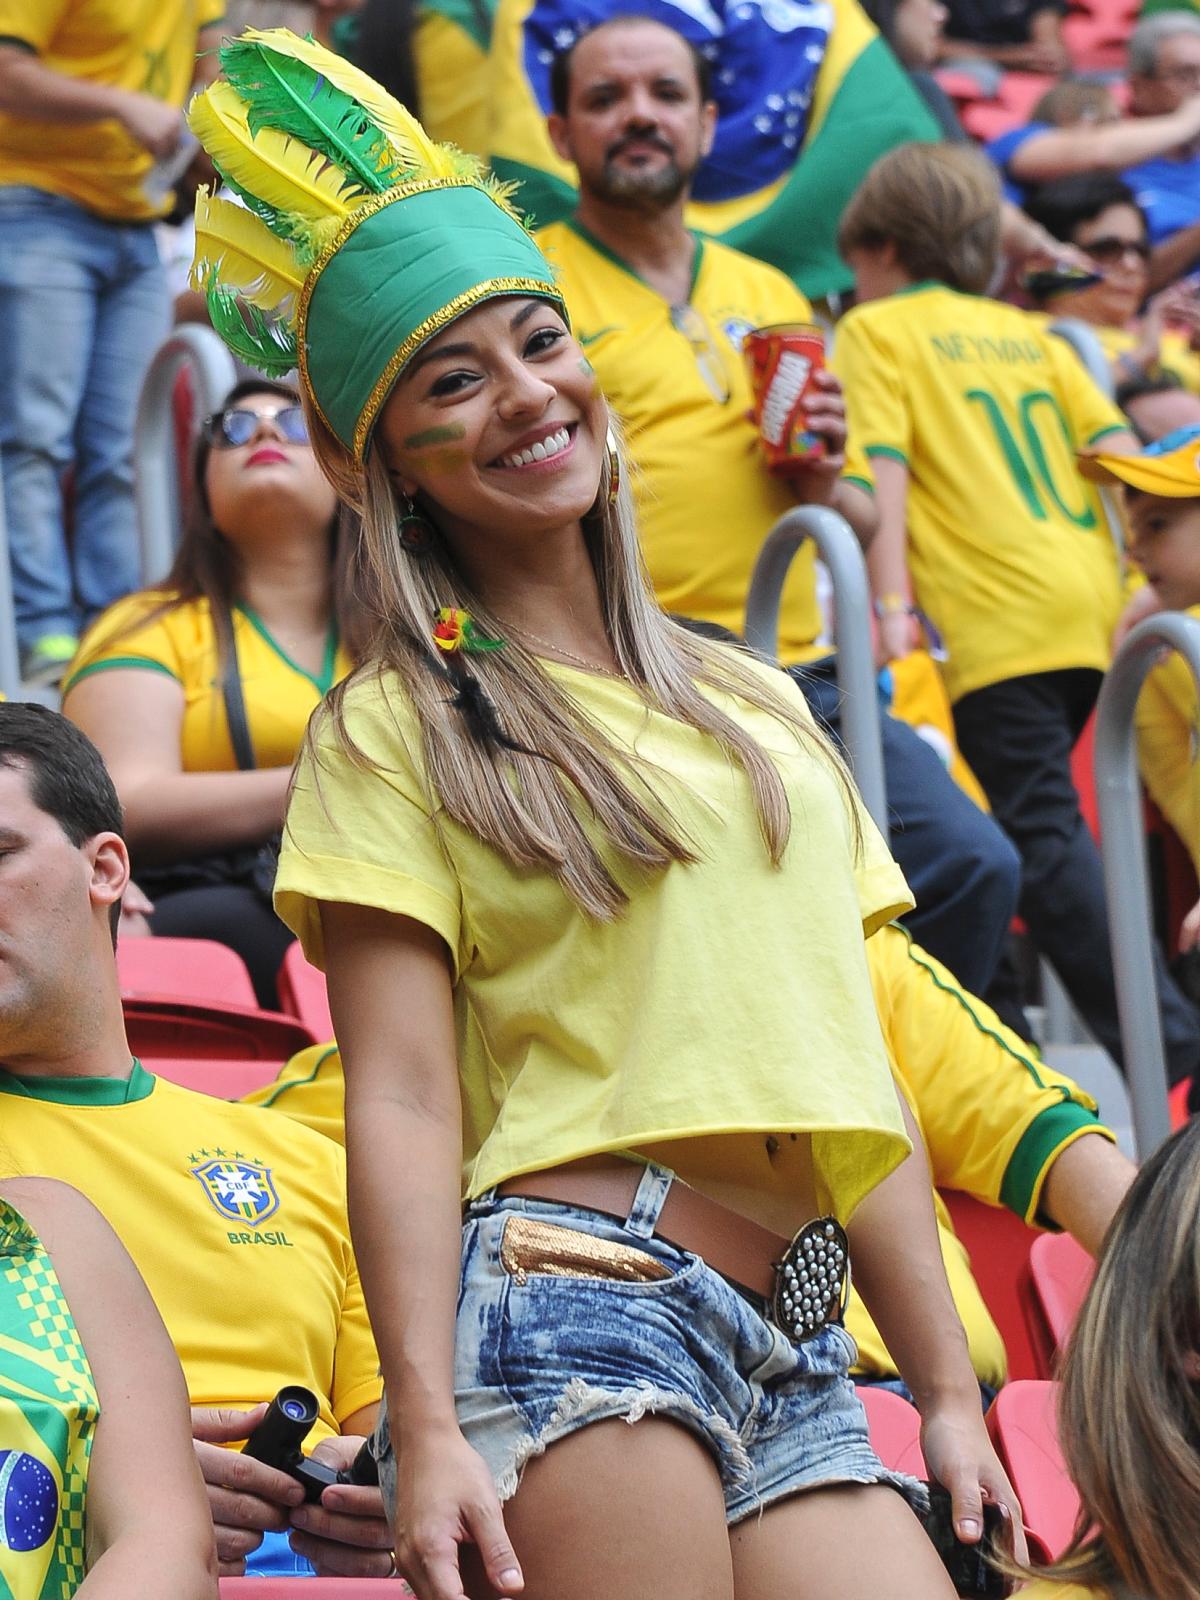 25-hot-brazil-fan-2-hottest-female-fans-2014-world-cup.jpg